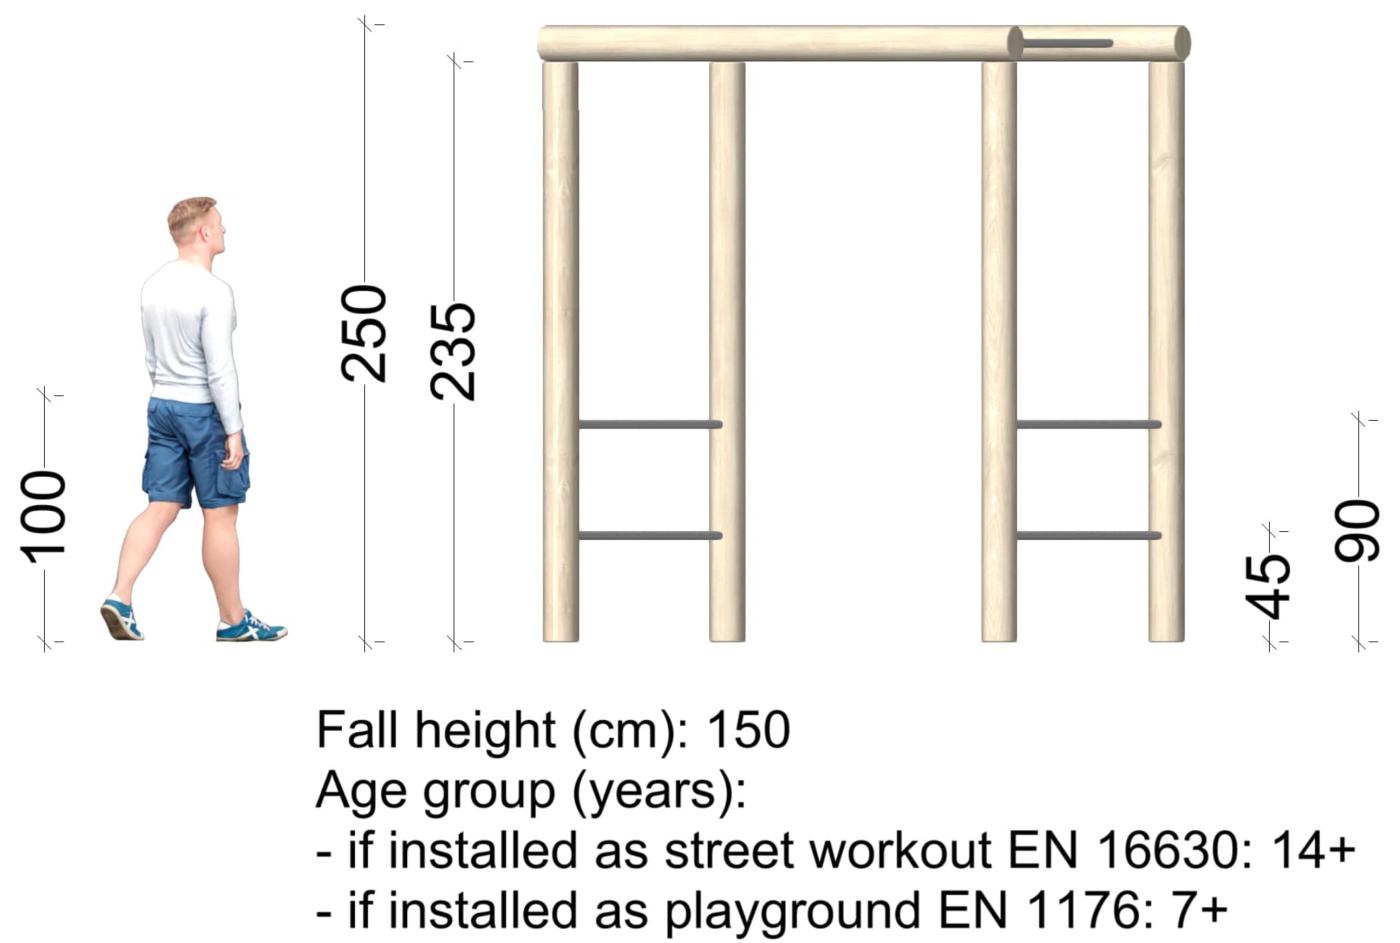 Escalera horizontal de calistenia de madeira de robinia